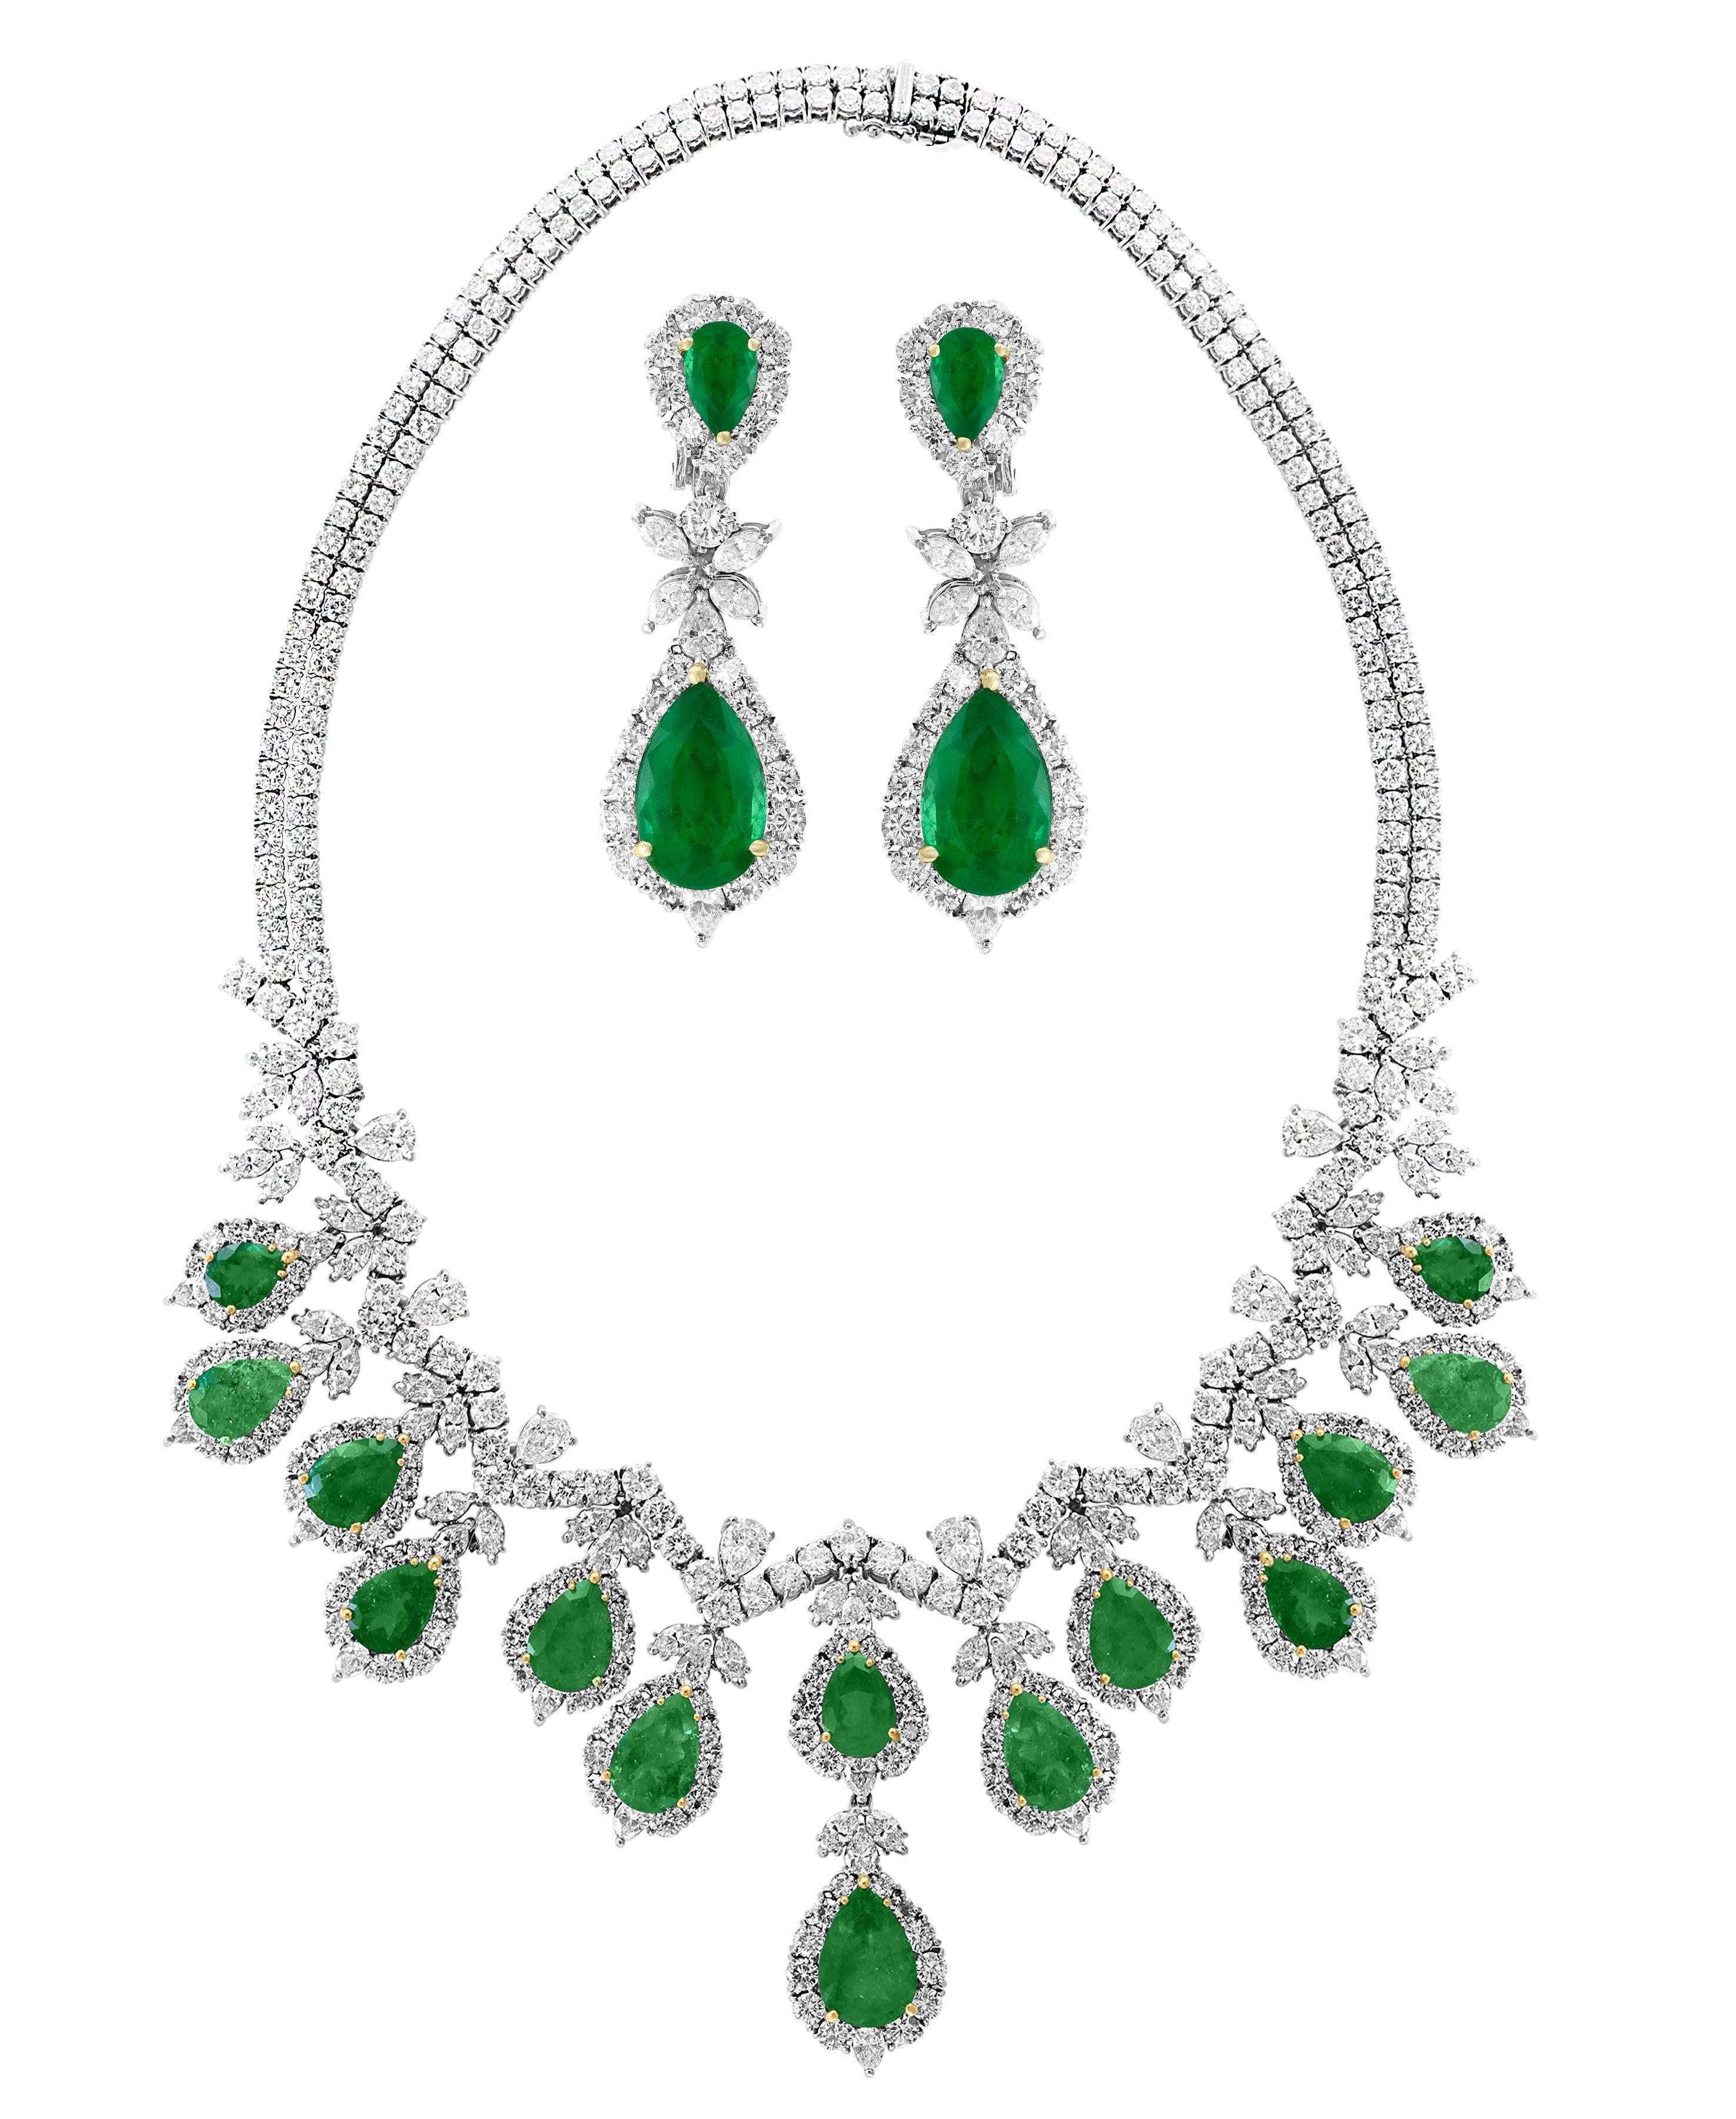 Folgendes umschreiben 
AGL zertifiziert Birne Form kolumbianischen Smaragd & Diamant Halskette & Ohrring Bridal Suite Platin
Farbe: Tiefgrün, Transparent, extrem gute Farbqualität
(Natürliche Smaragde werden häufig veredelt: aber dieser ist nur